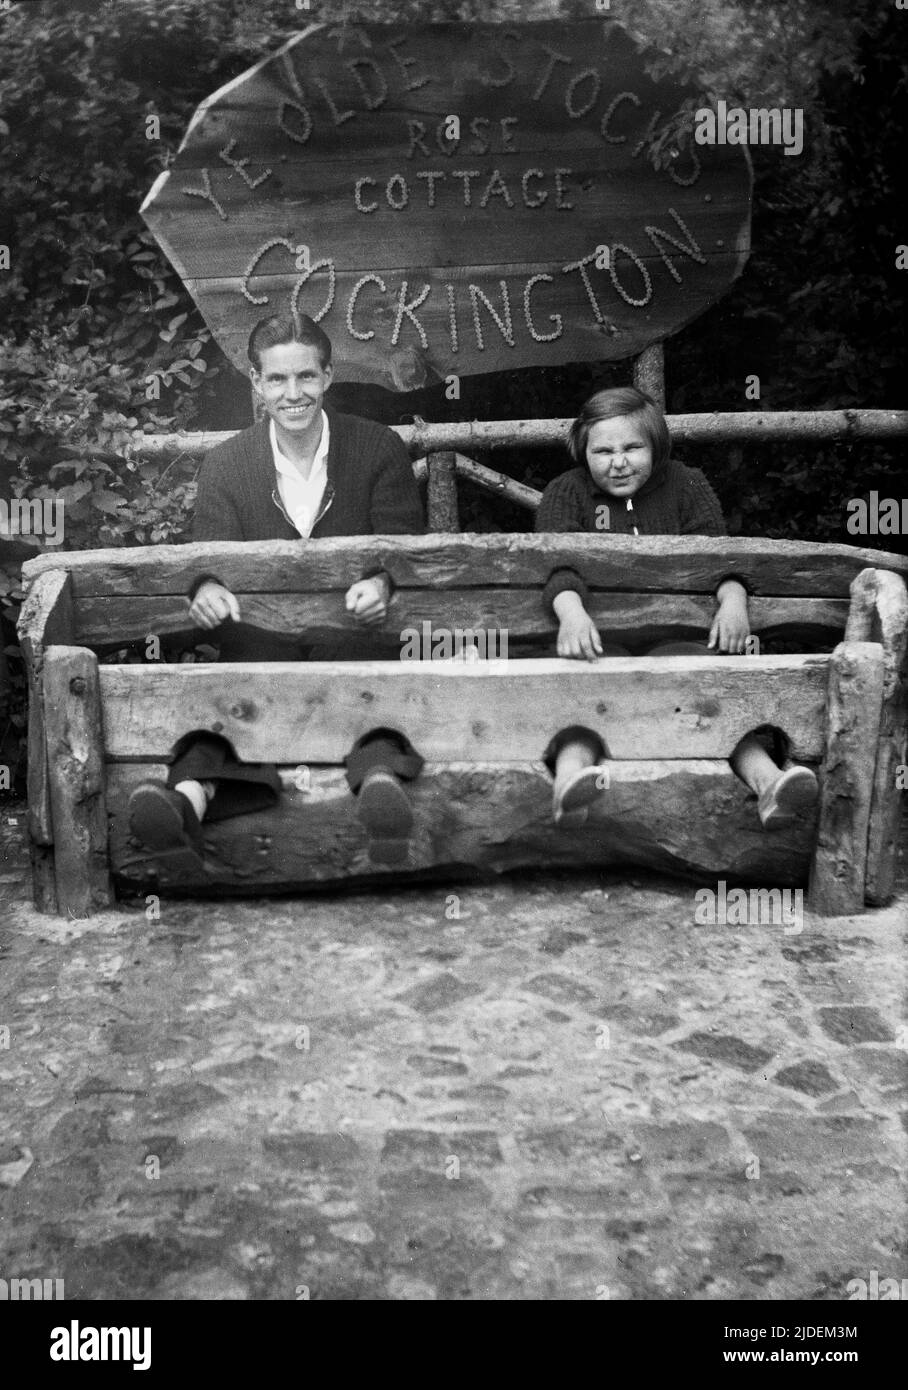 1935, historisch, ein Vater und eine Tochter, die für ihr Foto in „Ye Olde Stocks“ im Rose Cottage in Cockington, Torquay, Devon, England, Großbritannien, sitzen. Vorräte waren Holzgeräte, die als eine Form der "Bestrafung" und "Scham" für lokale Straftäter von Kleinkriminalität verwendet wurden und die Straftäter mit Füßen und Händen fesselten. Auf Dorfgrüns in Großbritannien gesehen, waren sie bis zum Ende des 18.. Jahrhunderts im Einsatz. Stockfoto